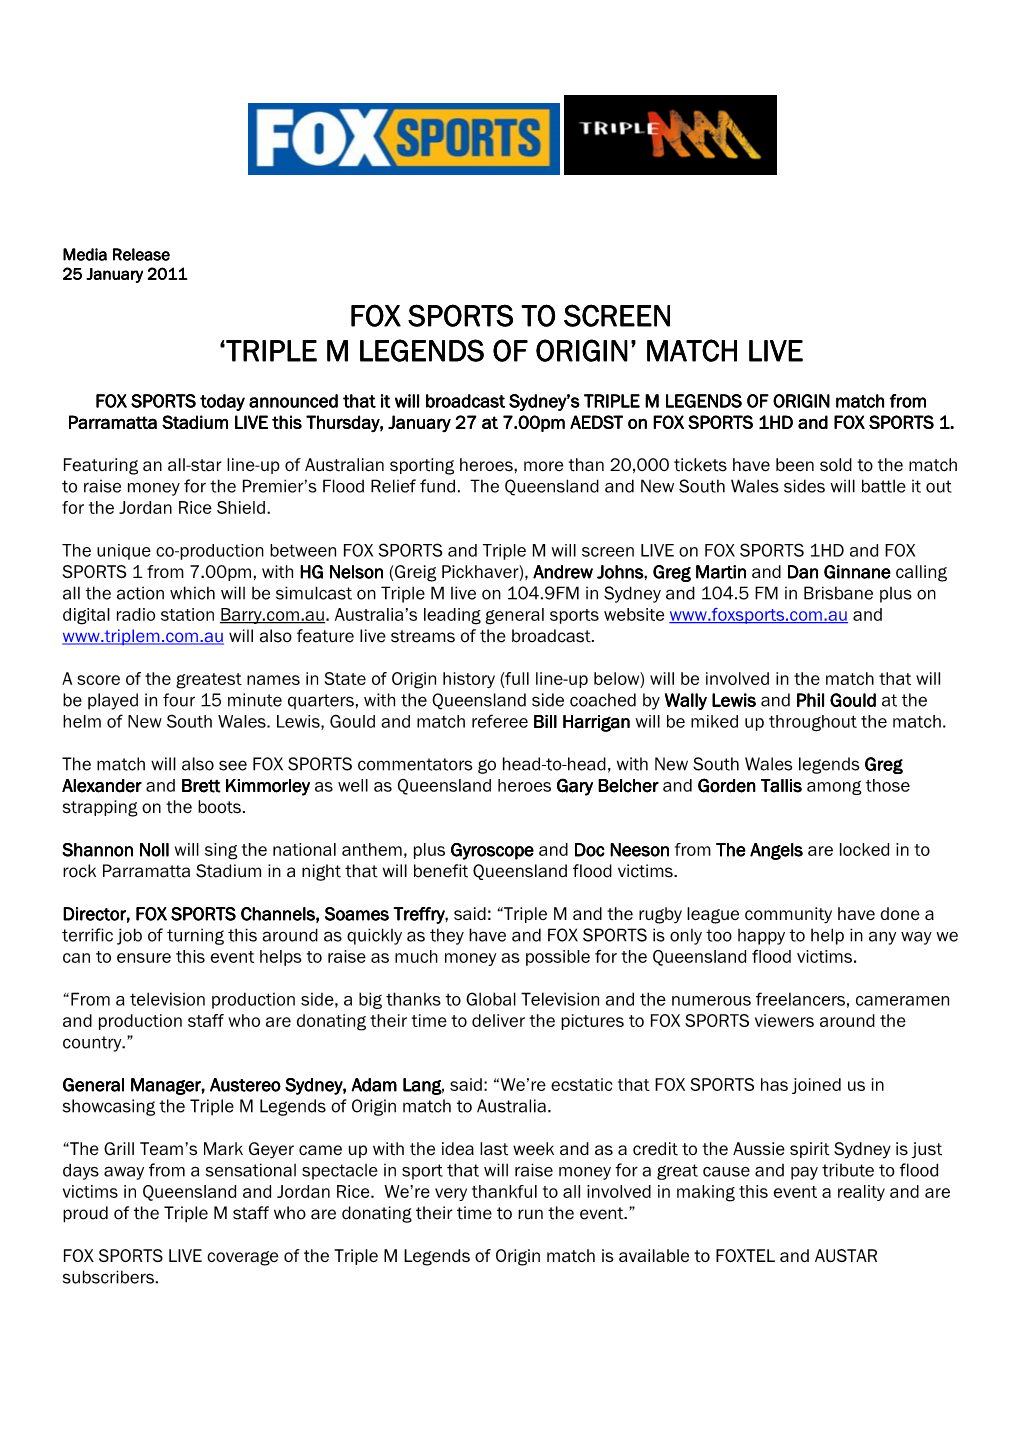 110125 Fox Sports to Screen Triple M Legends of Origin Match Live